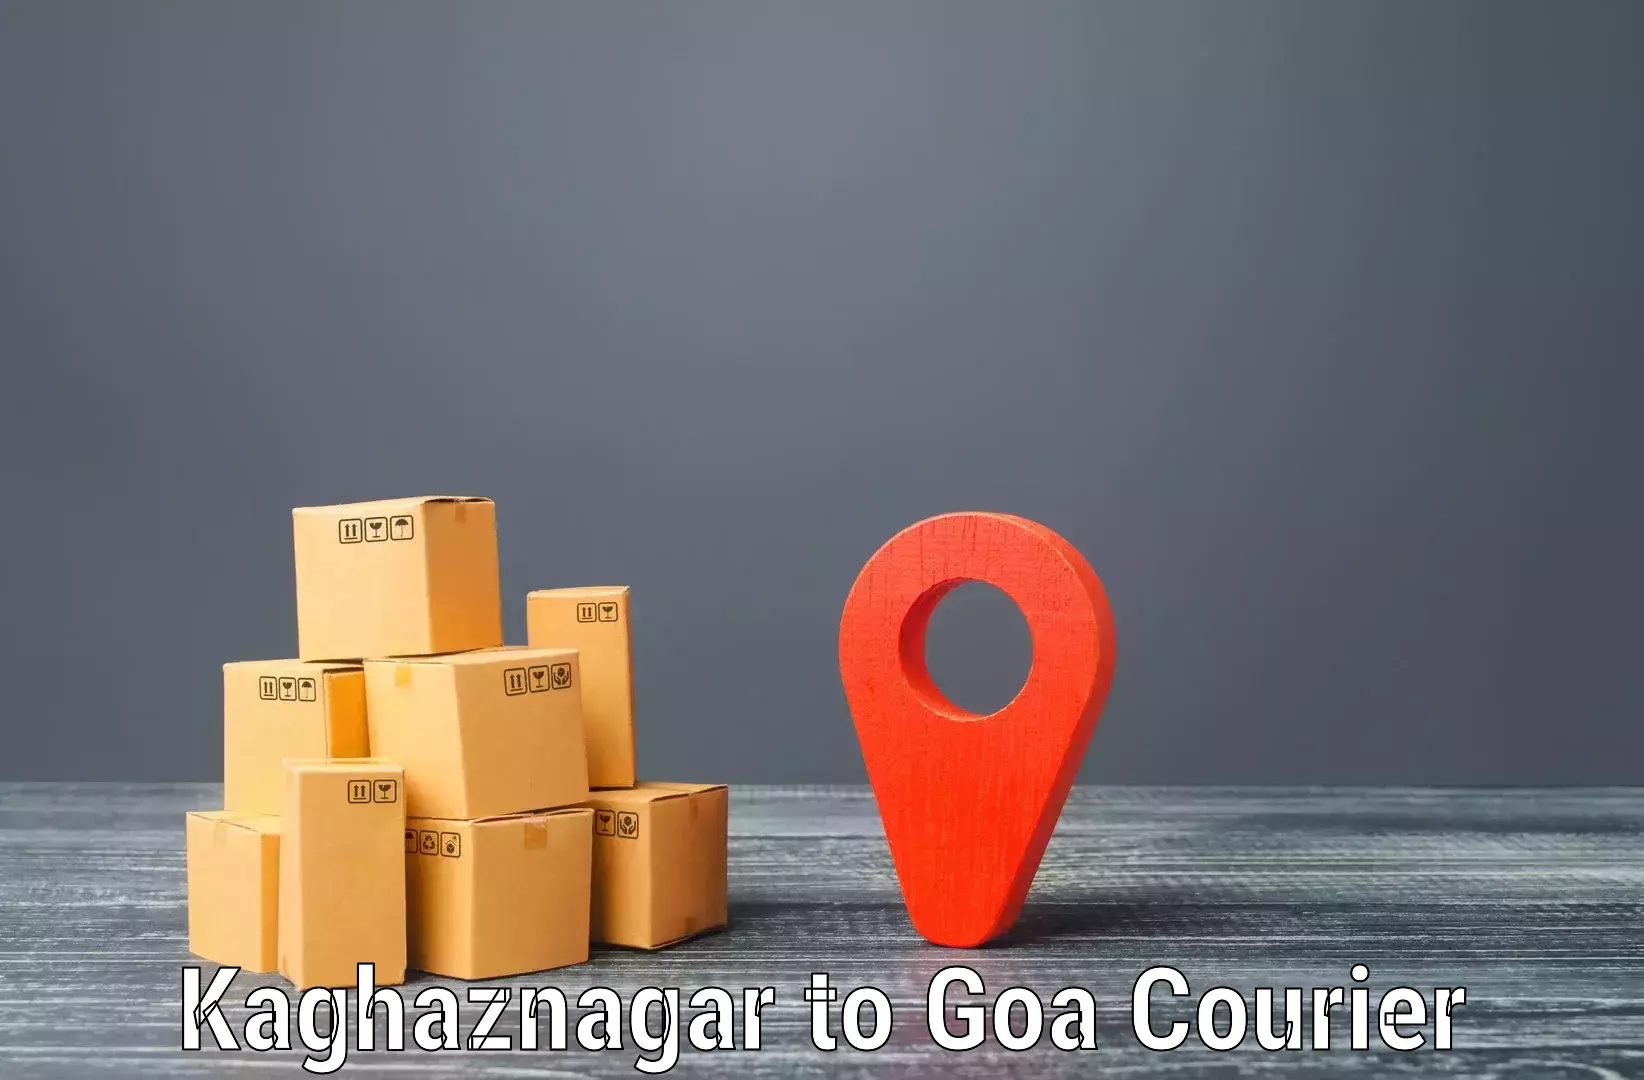 24-hour courier service Kaghaznagar to Sanvordem